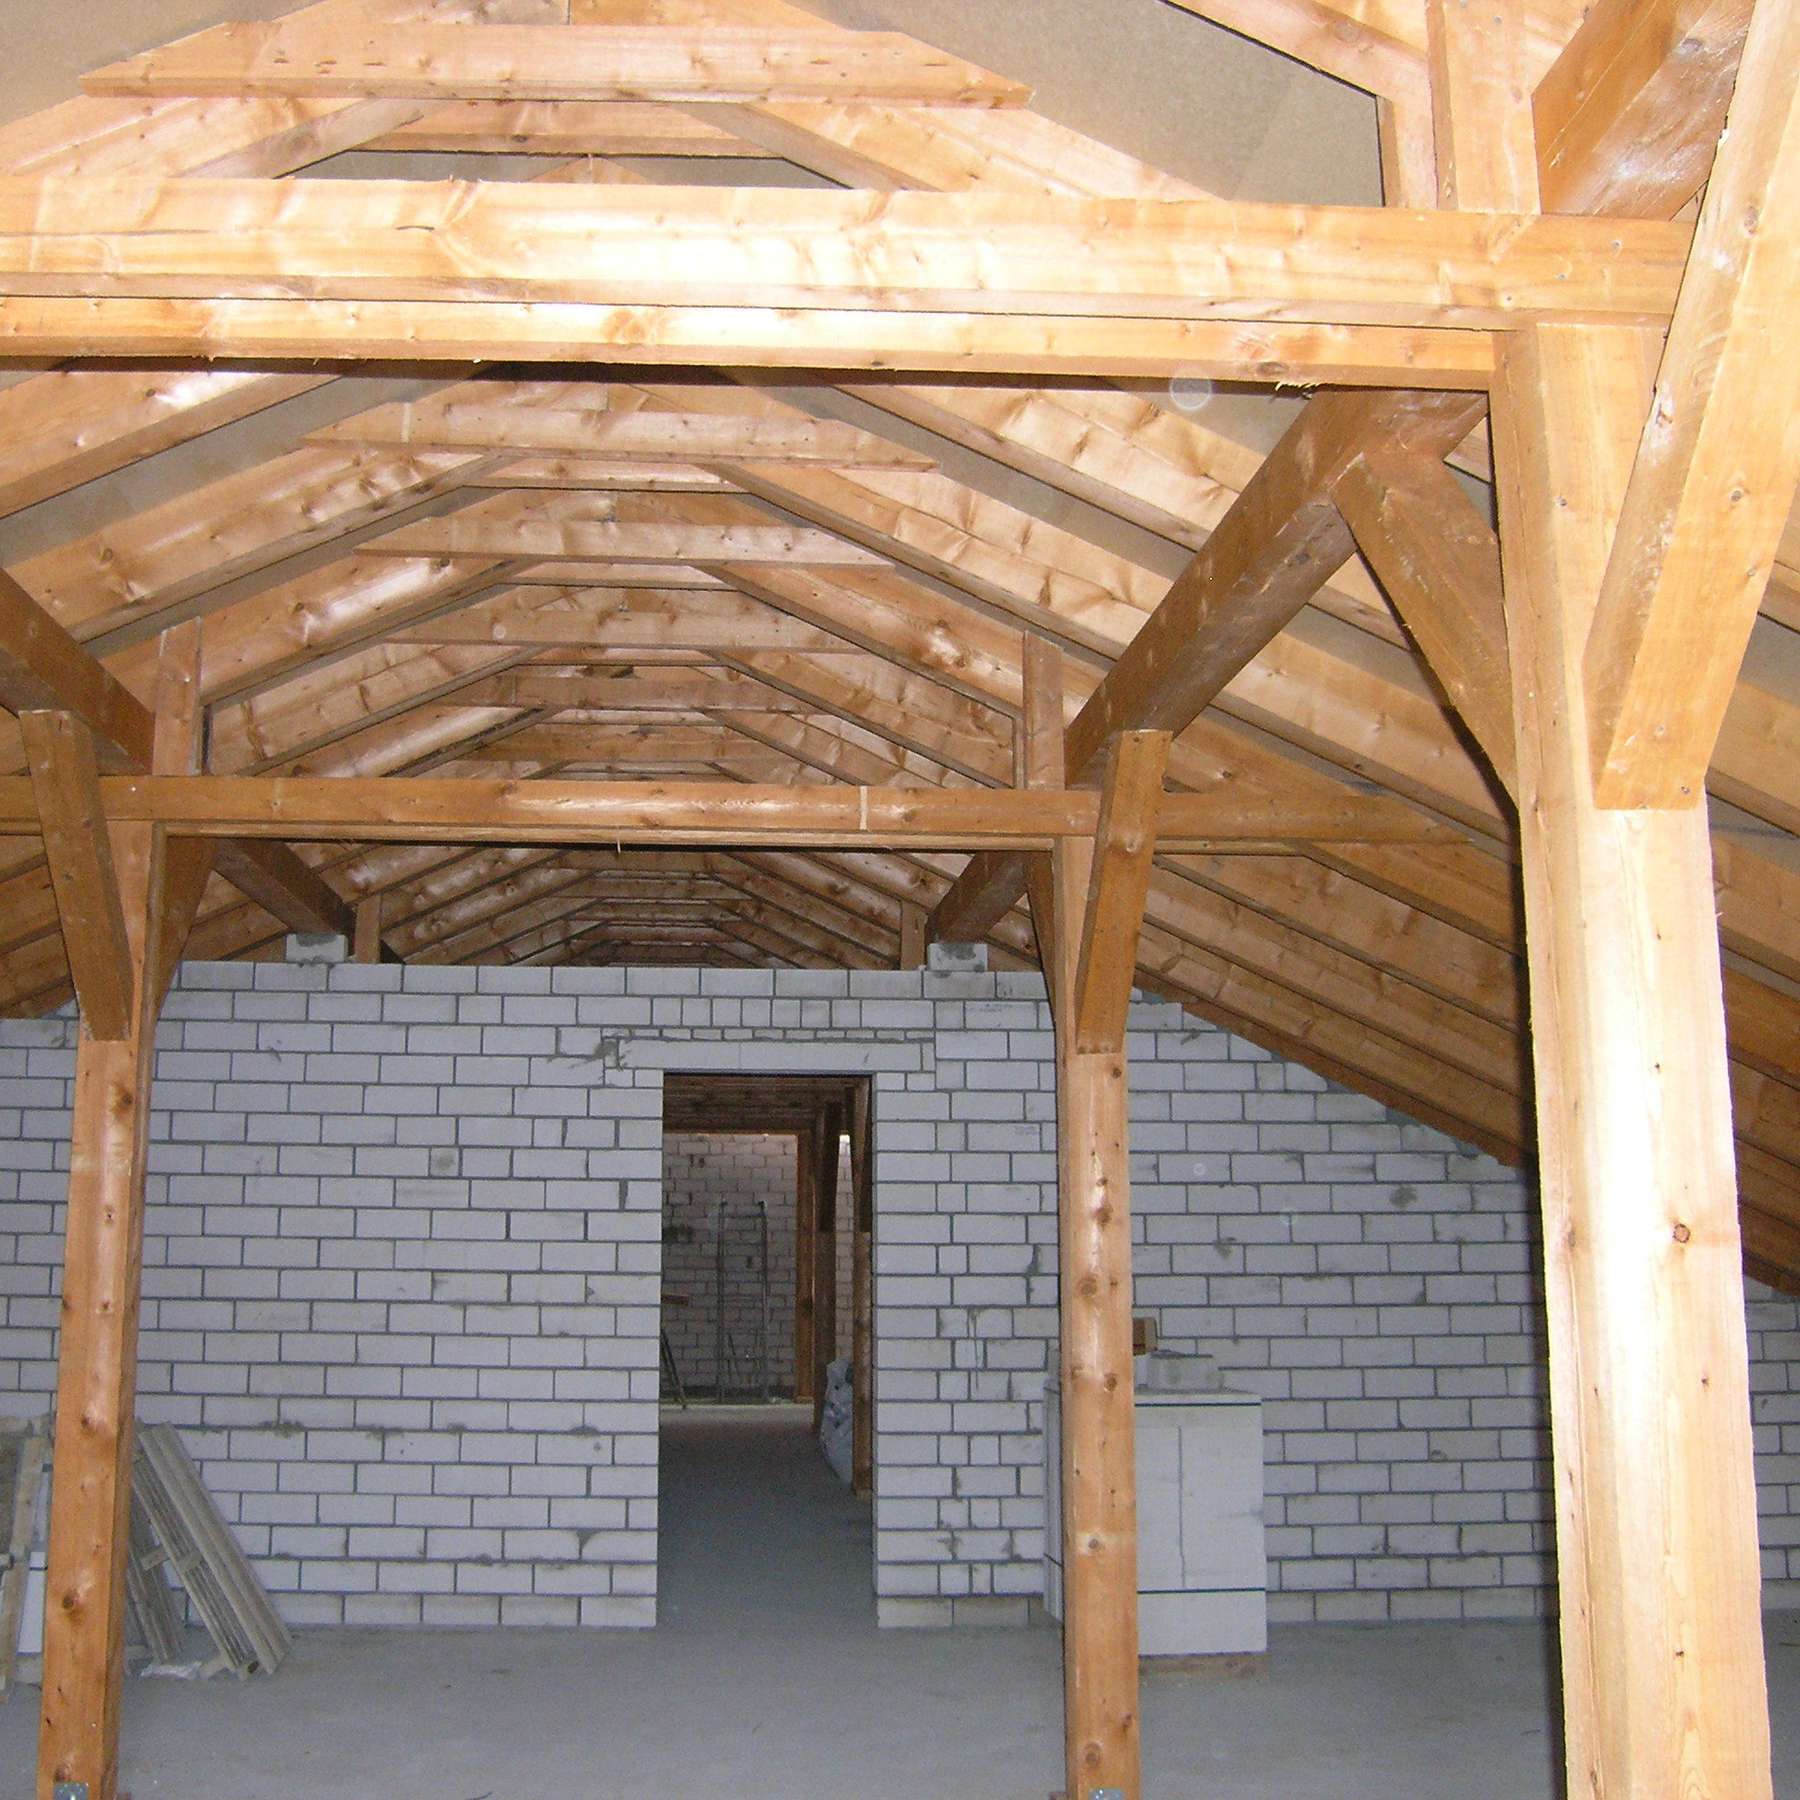 Blick in das Dachgeschoss auf den zimmermannsmäßig errichteten Dachstuhl © 2007 Betrieb für Bau und Liegenschaften Mecklenburg-Vorpommern